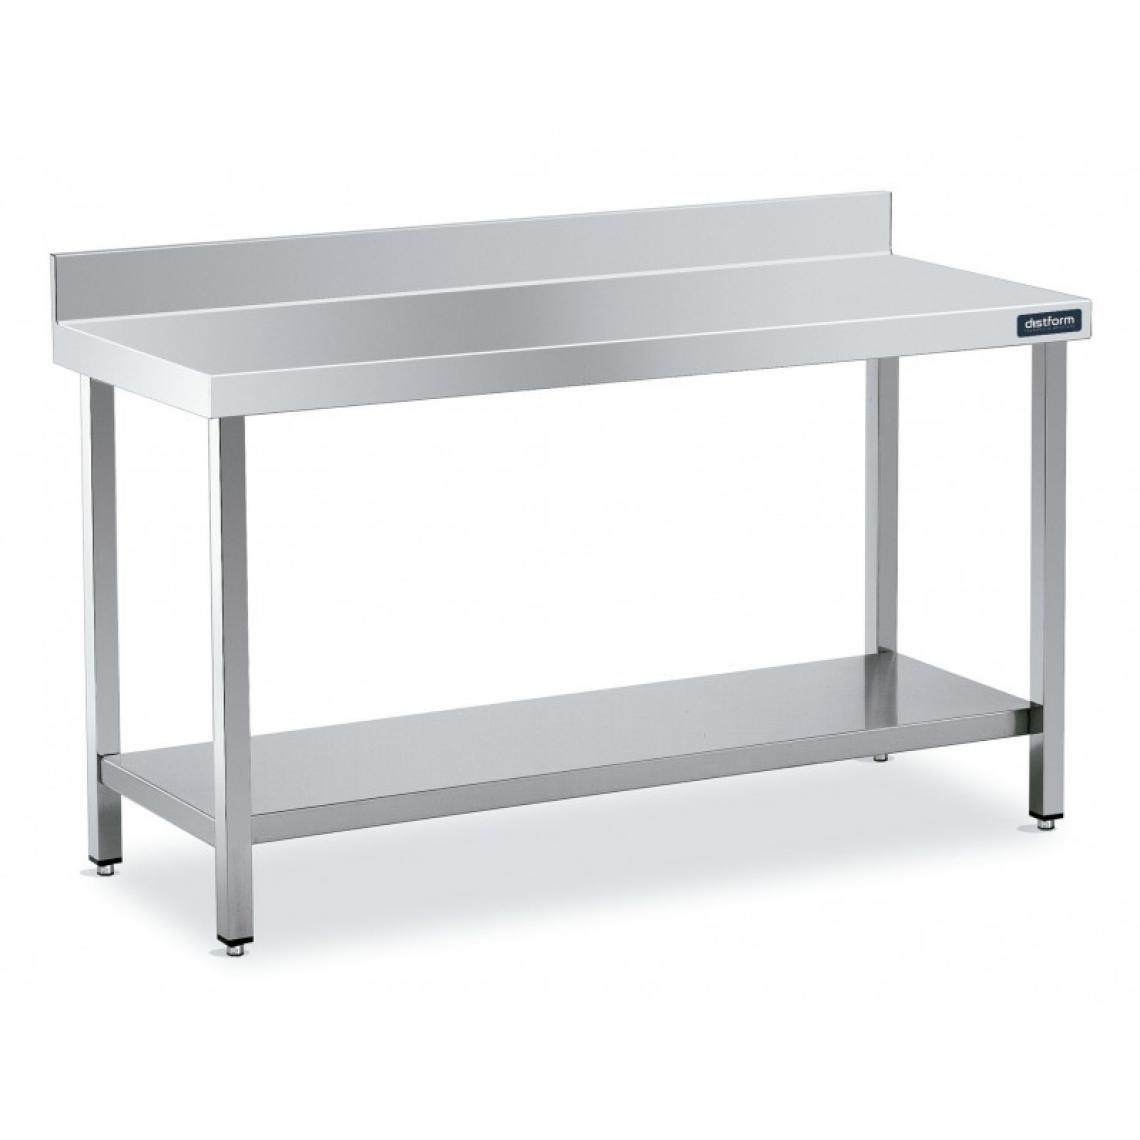 DISTFORM - Table Adossée en Inox avec 1 étagère Profondeur 550 mm - Distform - Acier inoxydable800x550 - Tables à manger